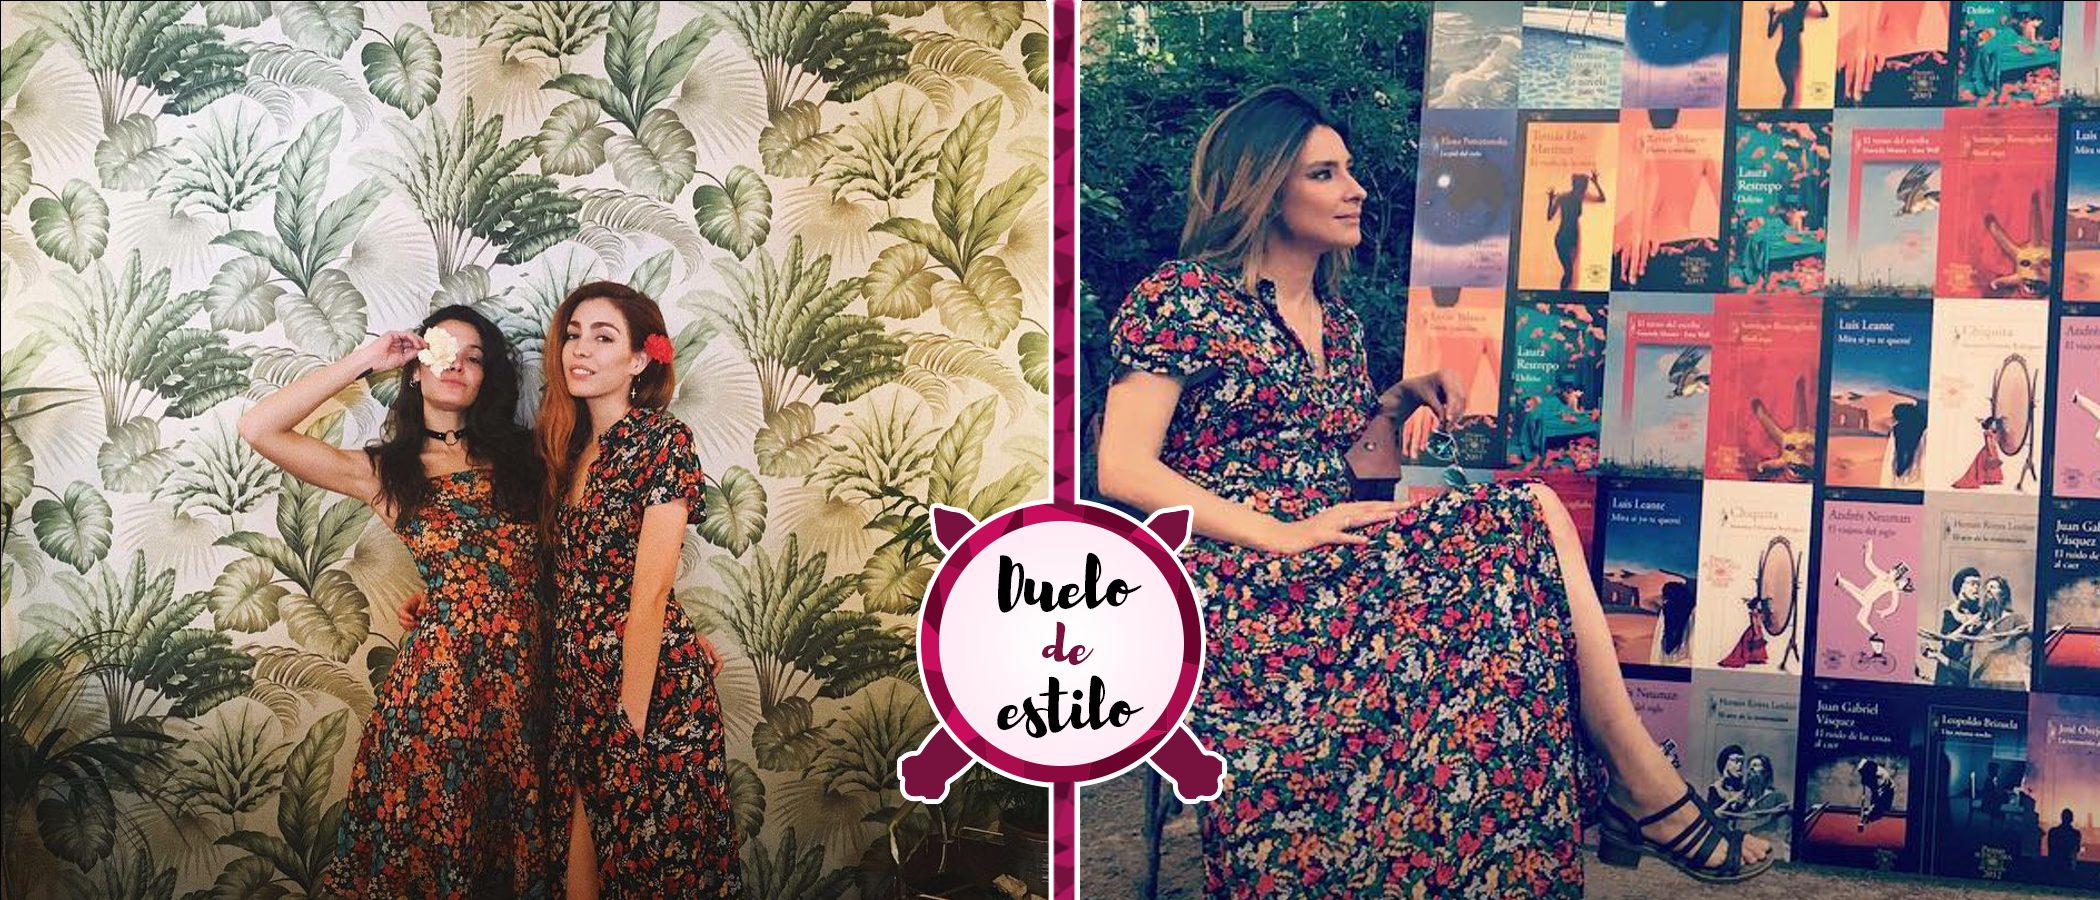 El vestido primaveral de Zara preferido de las celebs se convierte en viral: ¿A quién le sienta mejor?